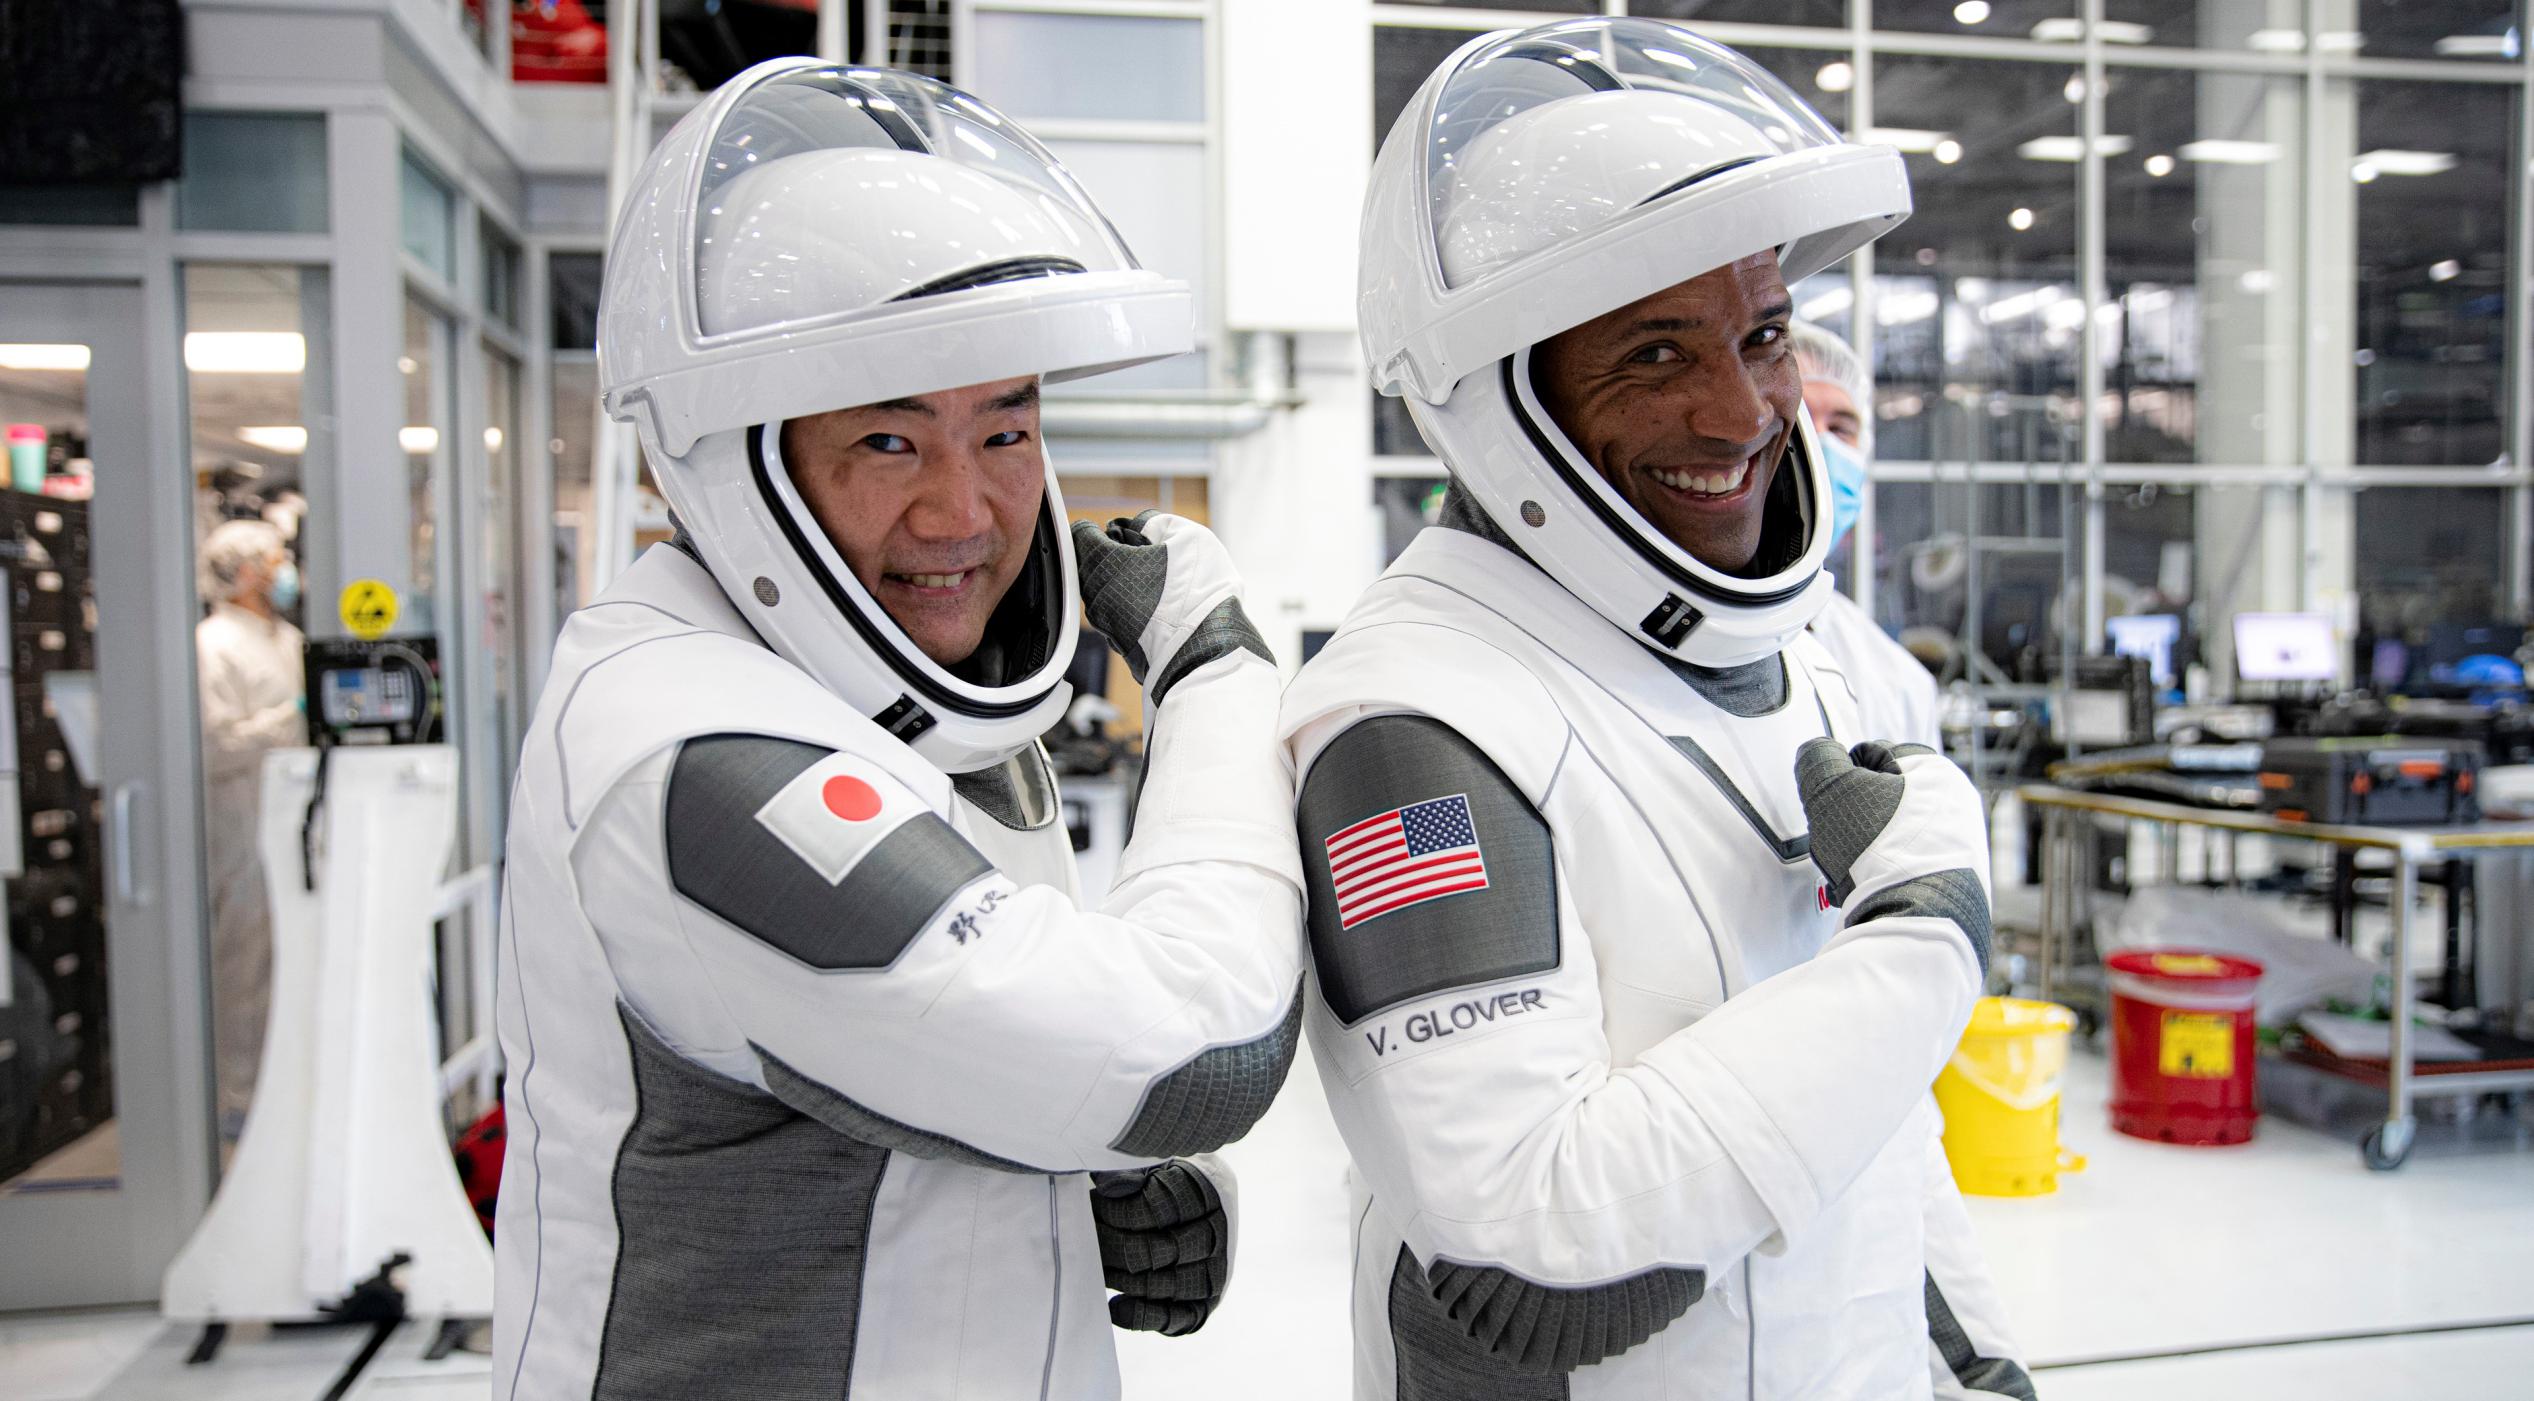 Crew-1 Crew Dragon Hopkins Noguchi Glover Walker Aug 2020 training (SpaceX) 8 crop (c)